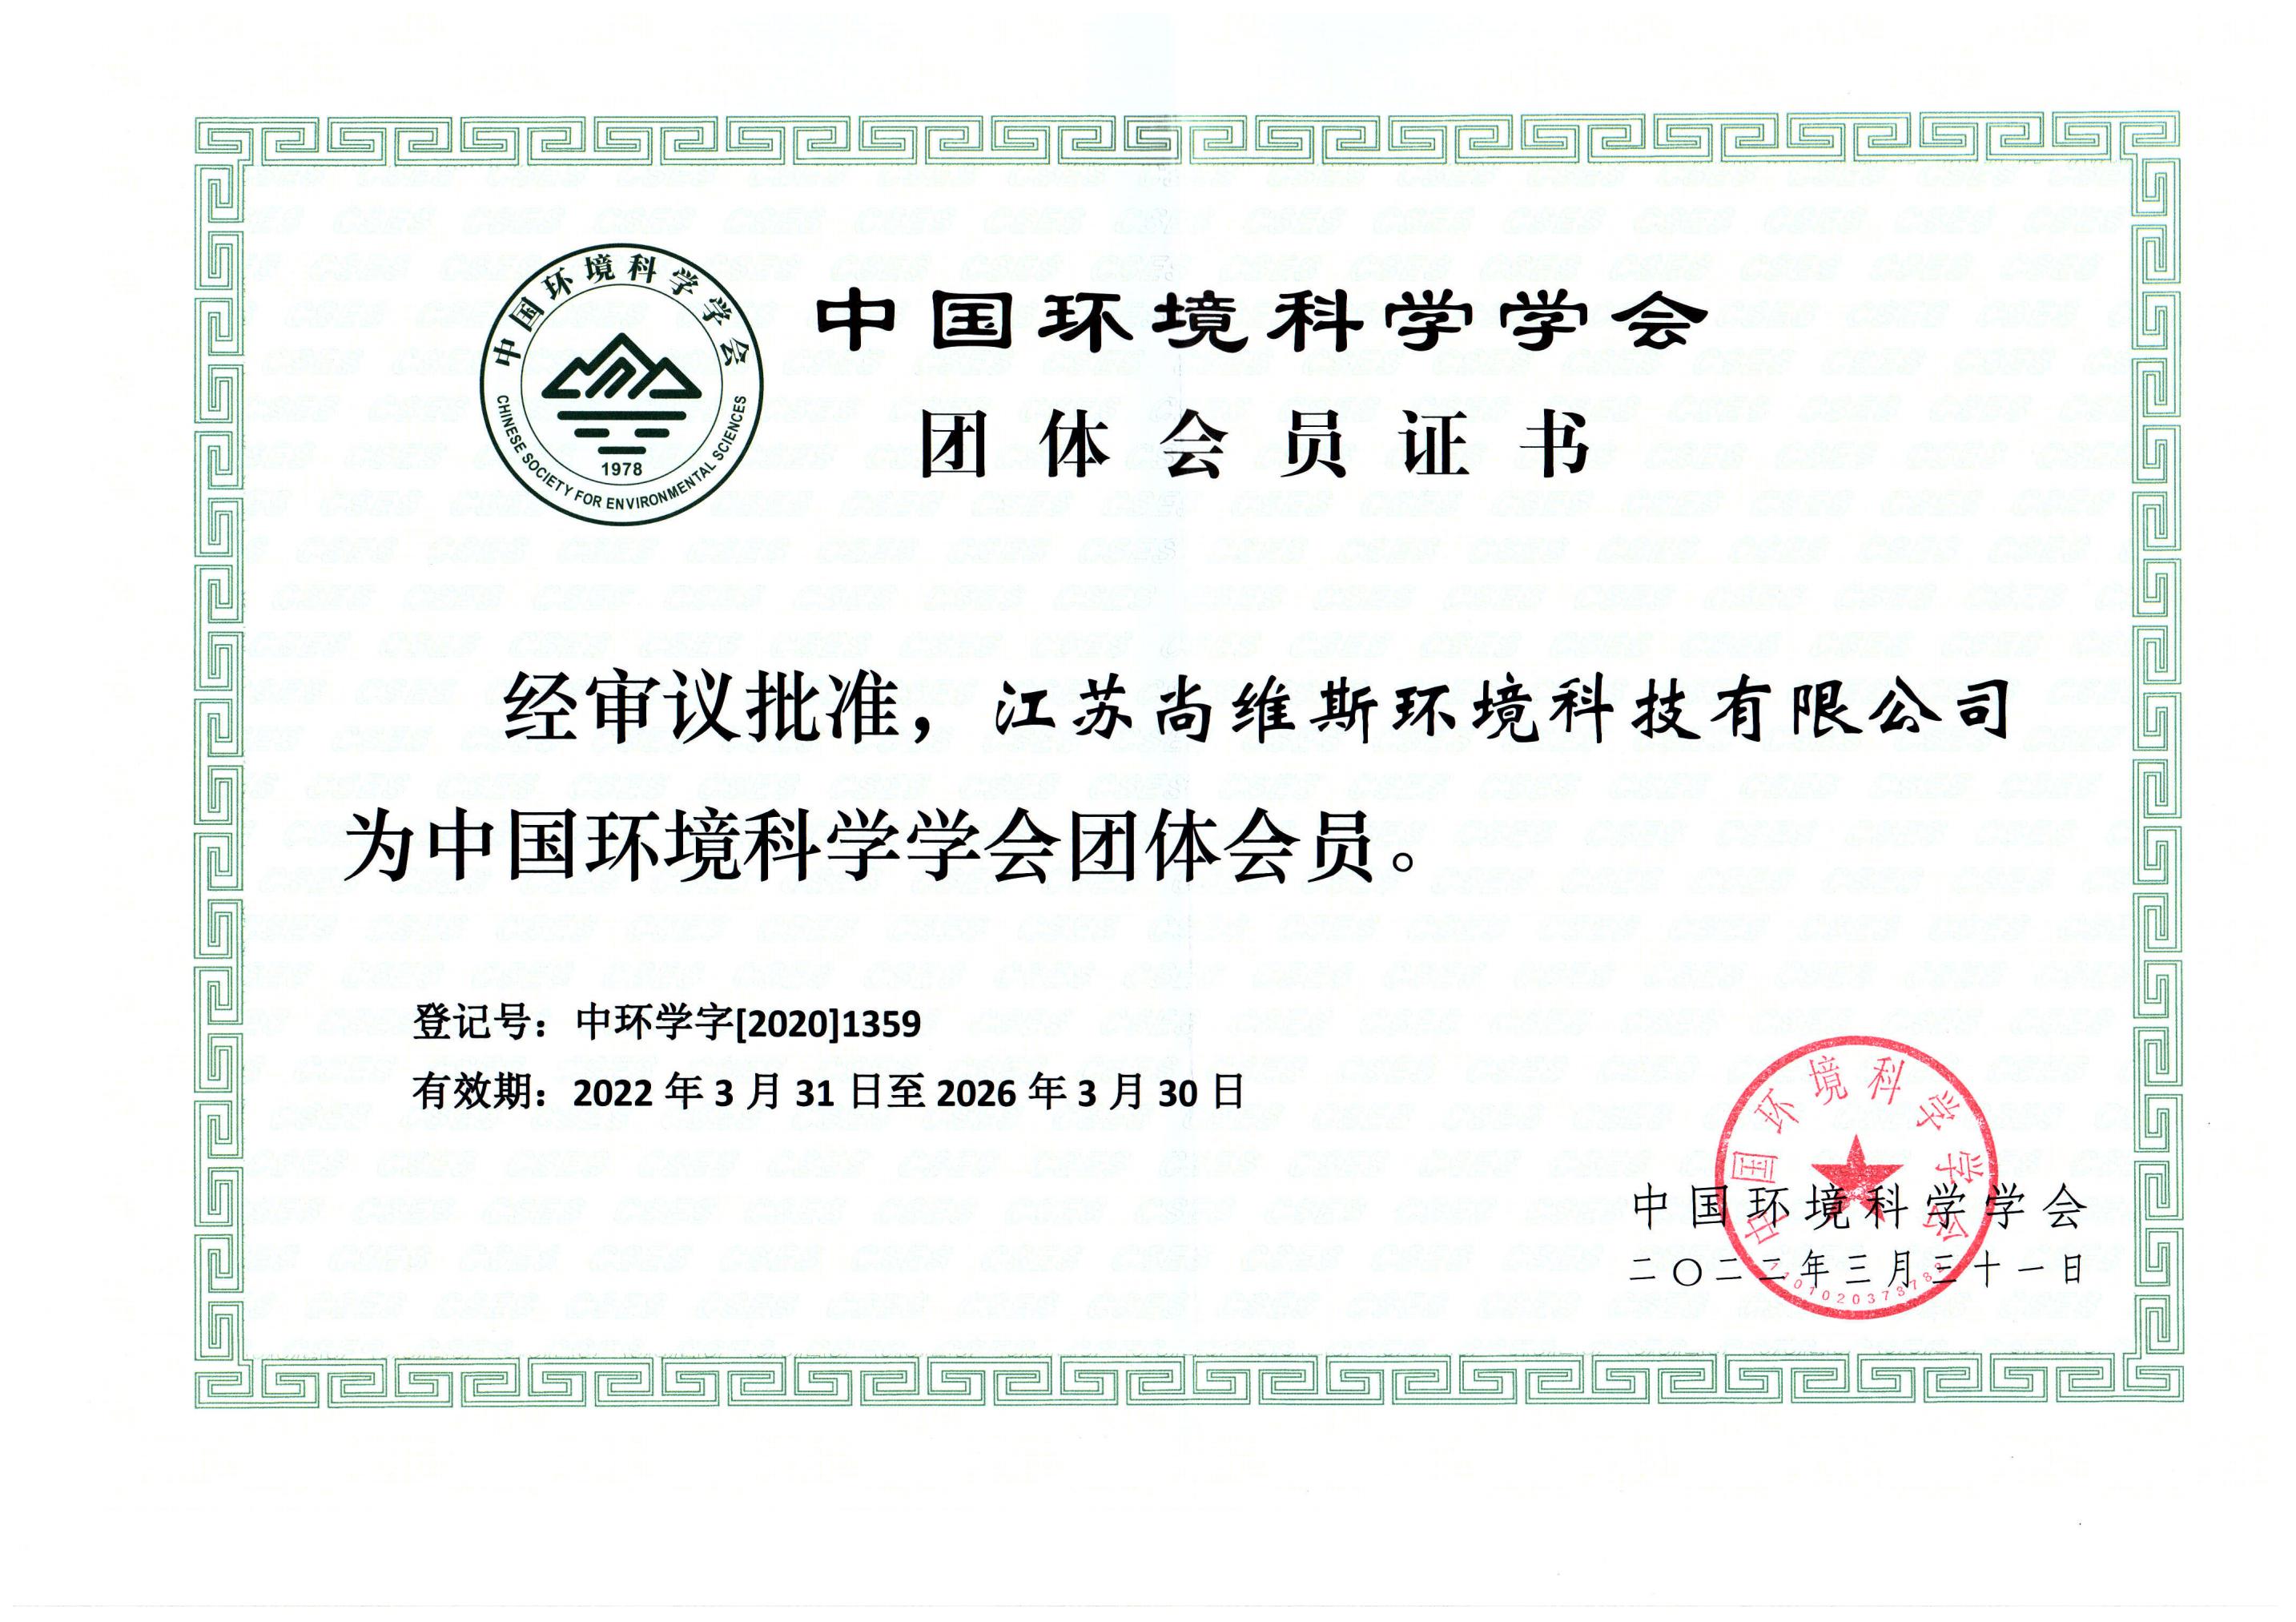 中國環境科學協會會員 